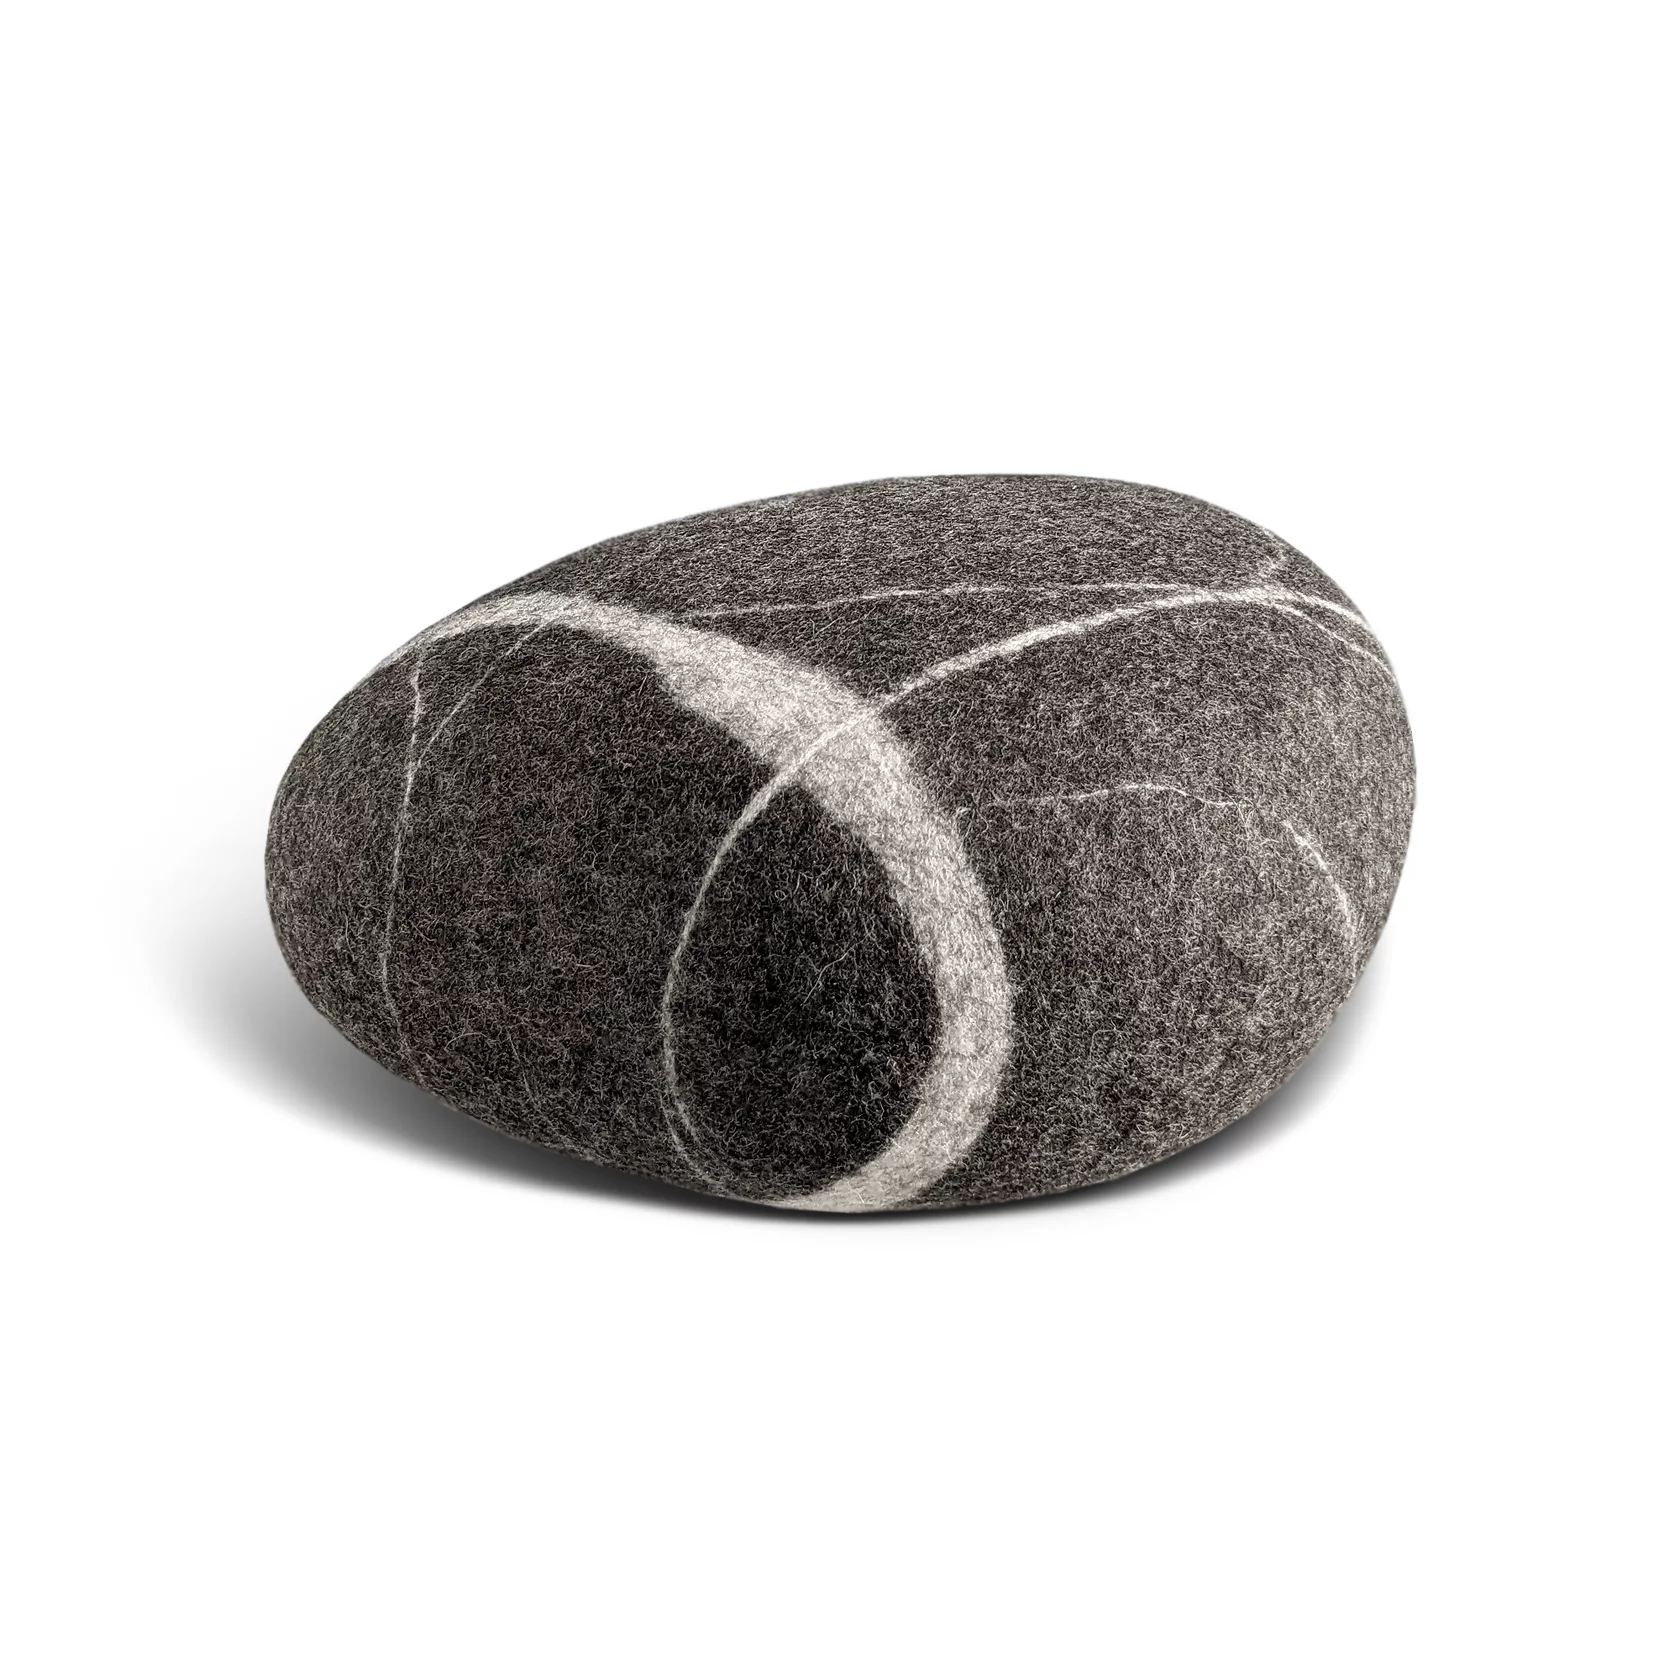 Felt Rock Pillows – Living Stone Pillow